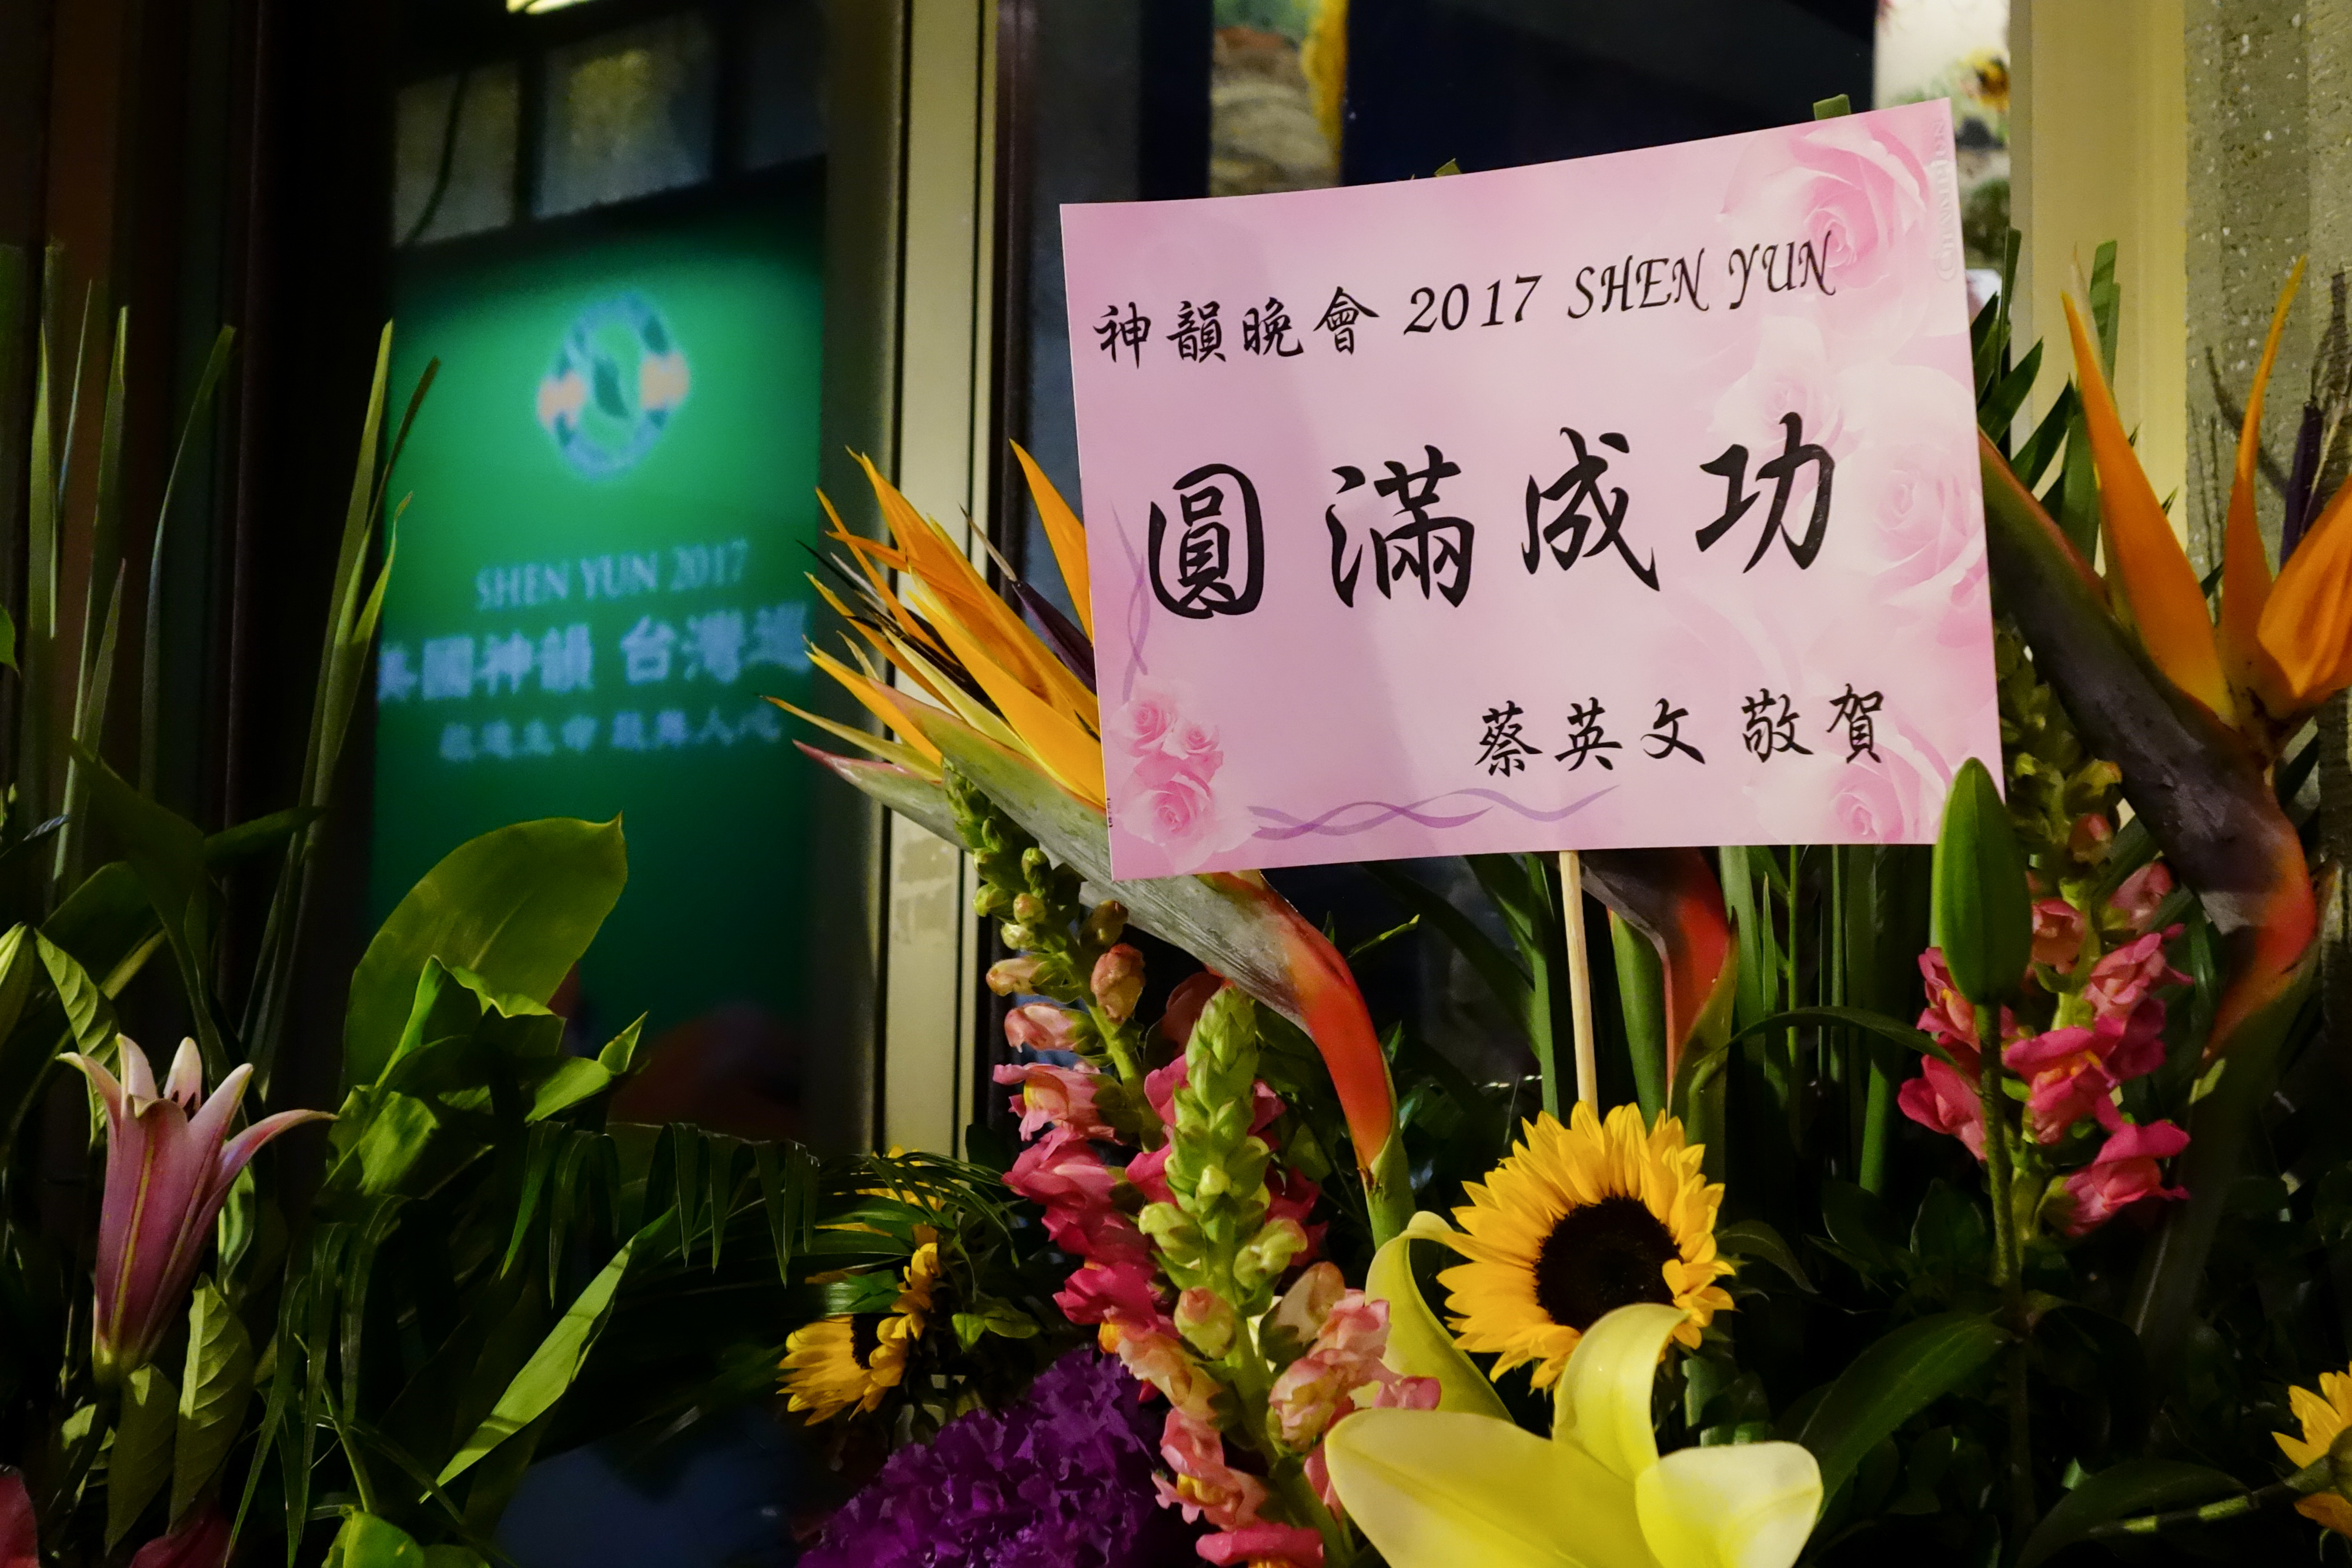 Blumenkorb und Glückwünsche für Shen Yun Performing Arts von der Präsidentin vonTaiwan, Cai Yingwen. Foto: Epoch Times